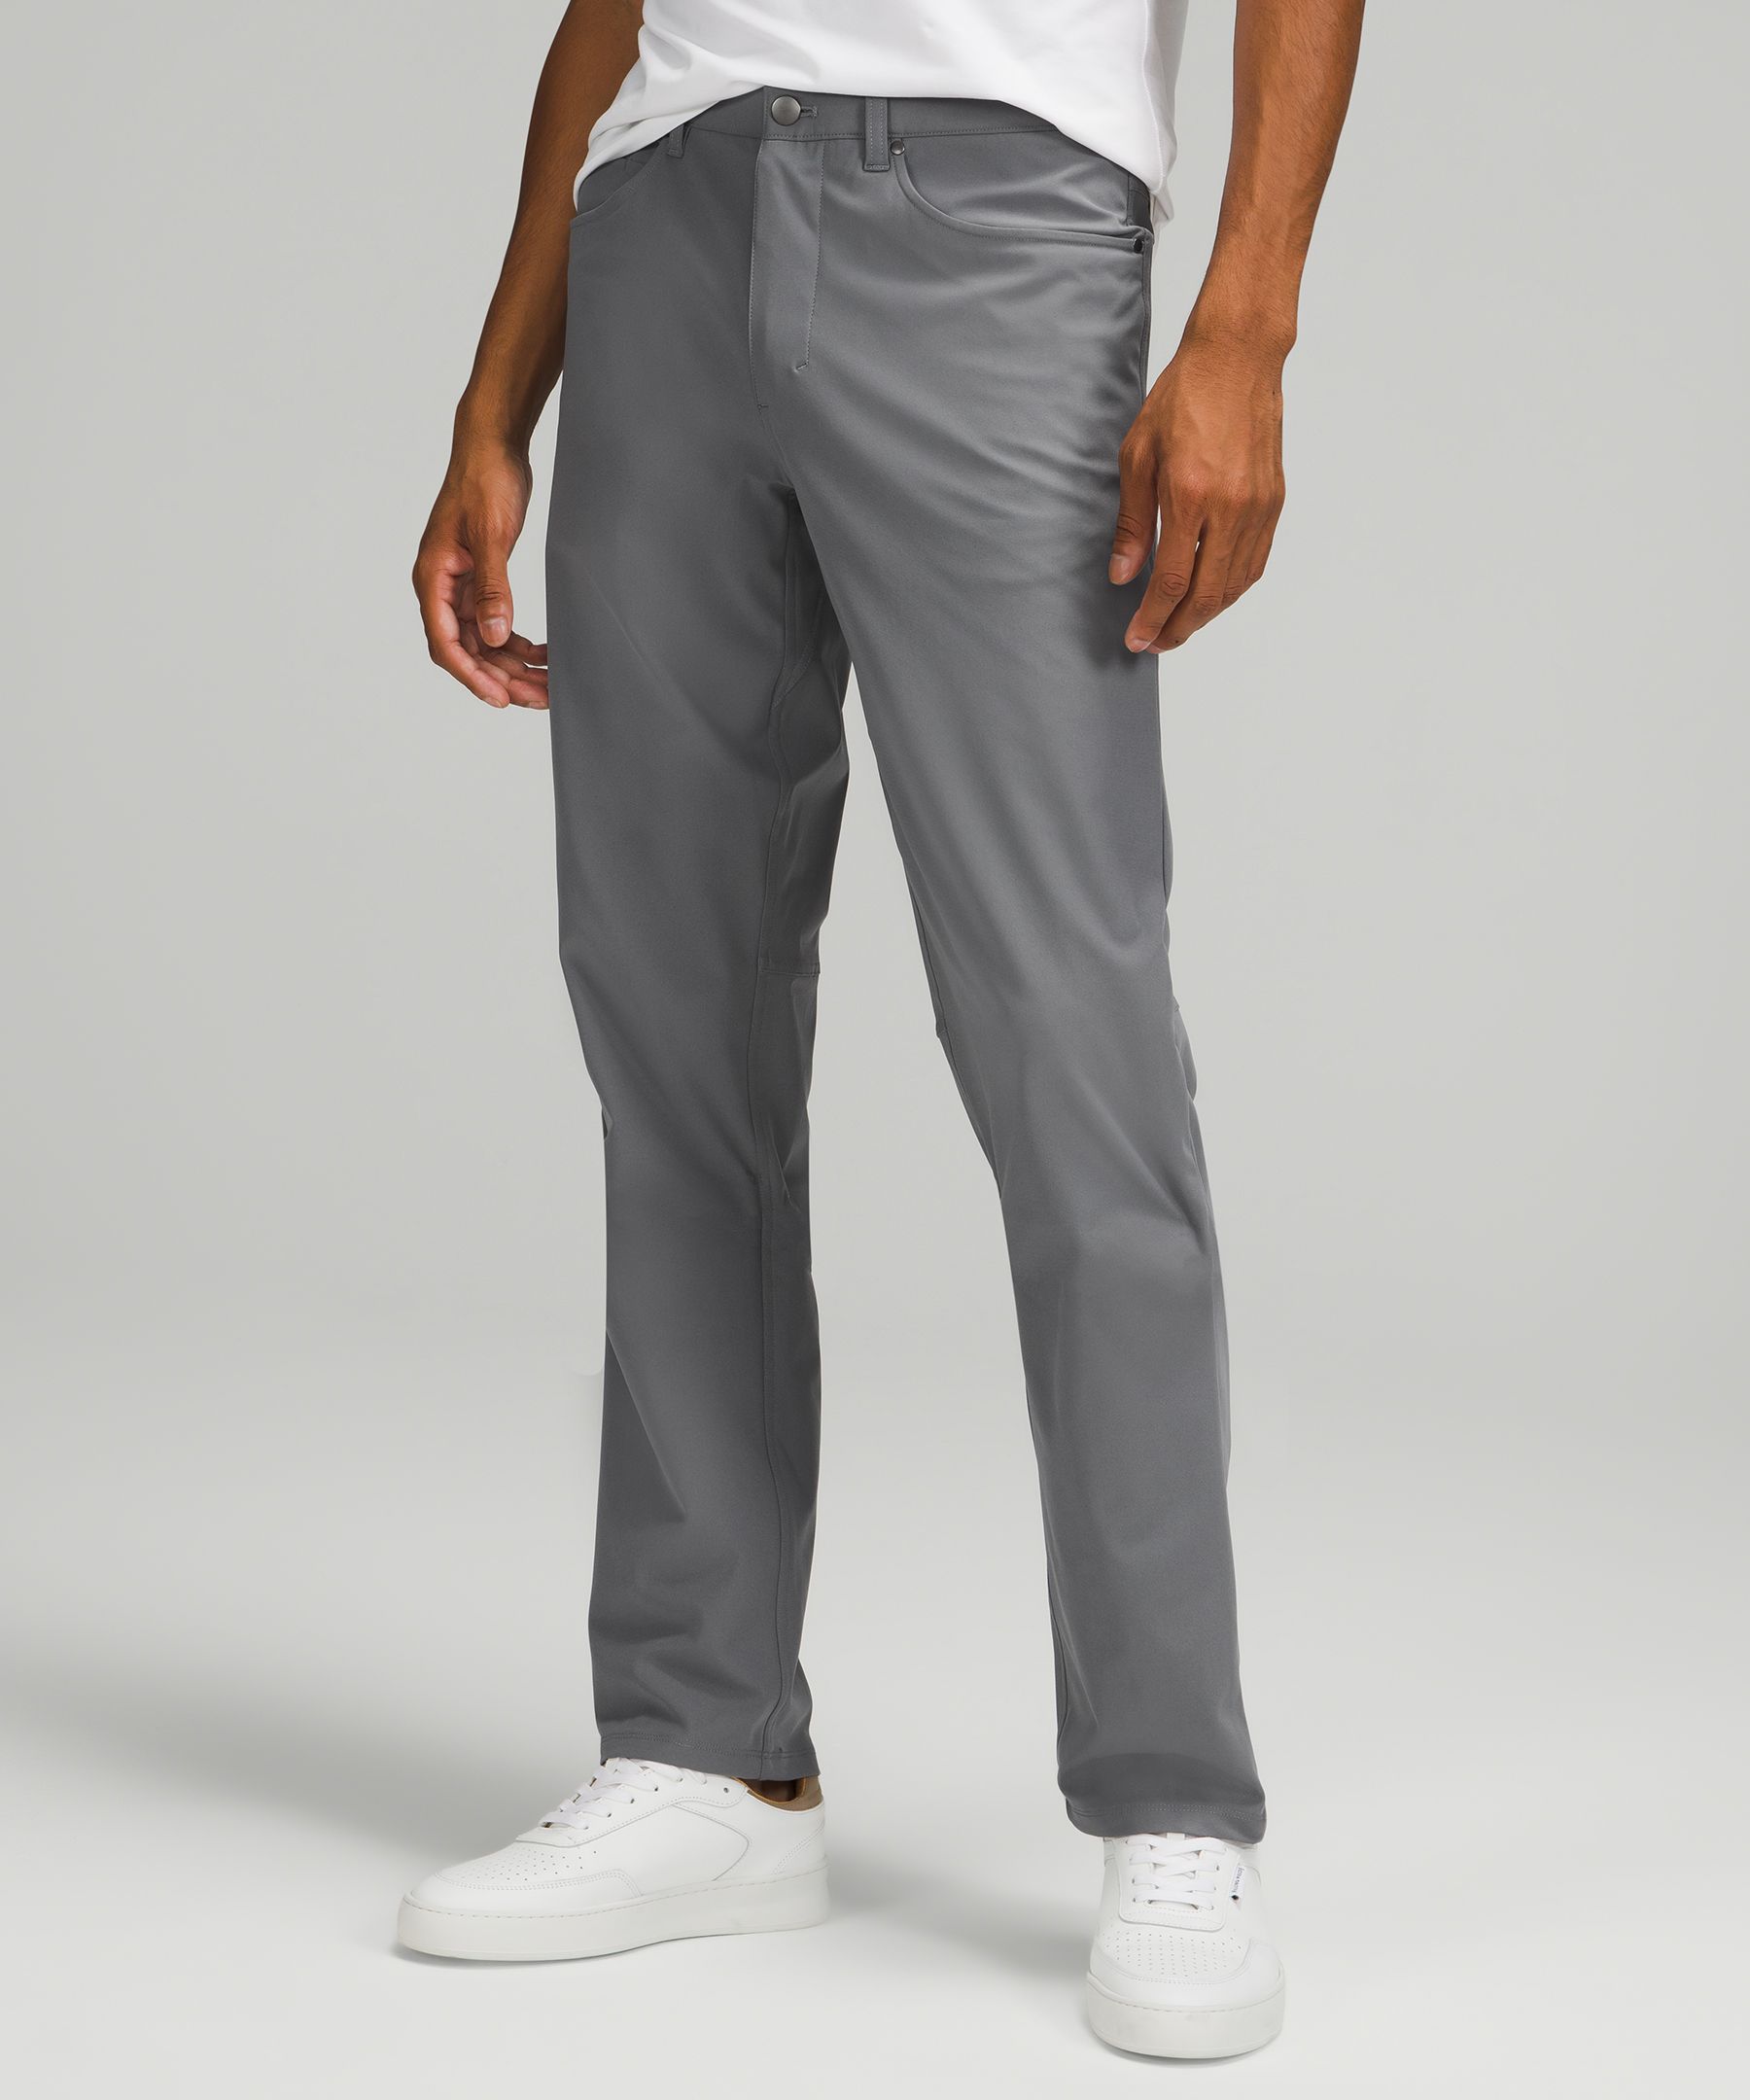 Lululemon Men ABC Classic-Fit Trouser 32 Warpstreme Pants Big Size